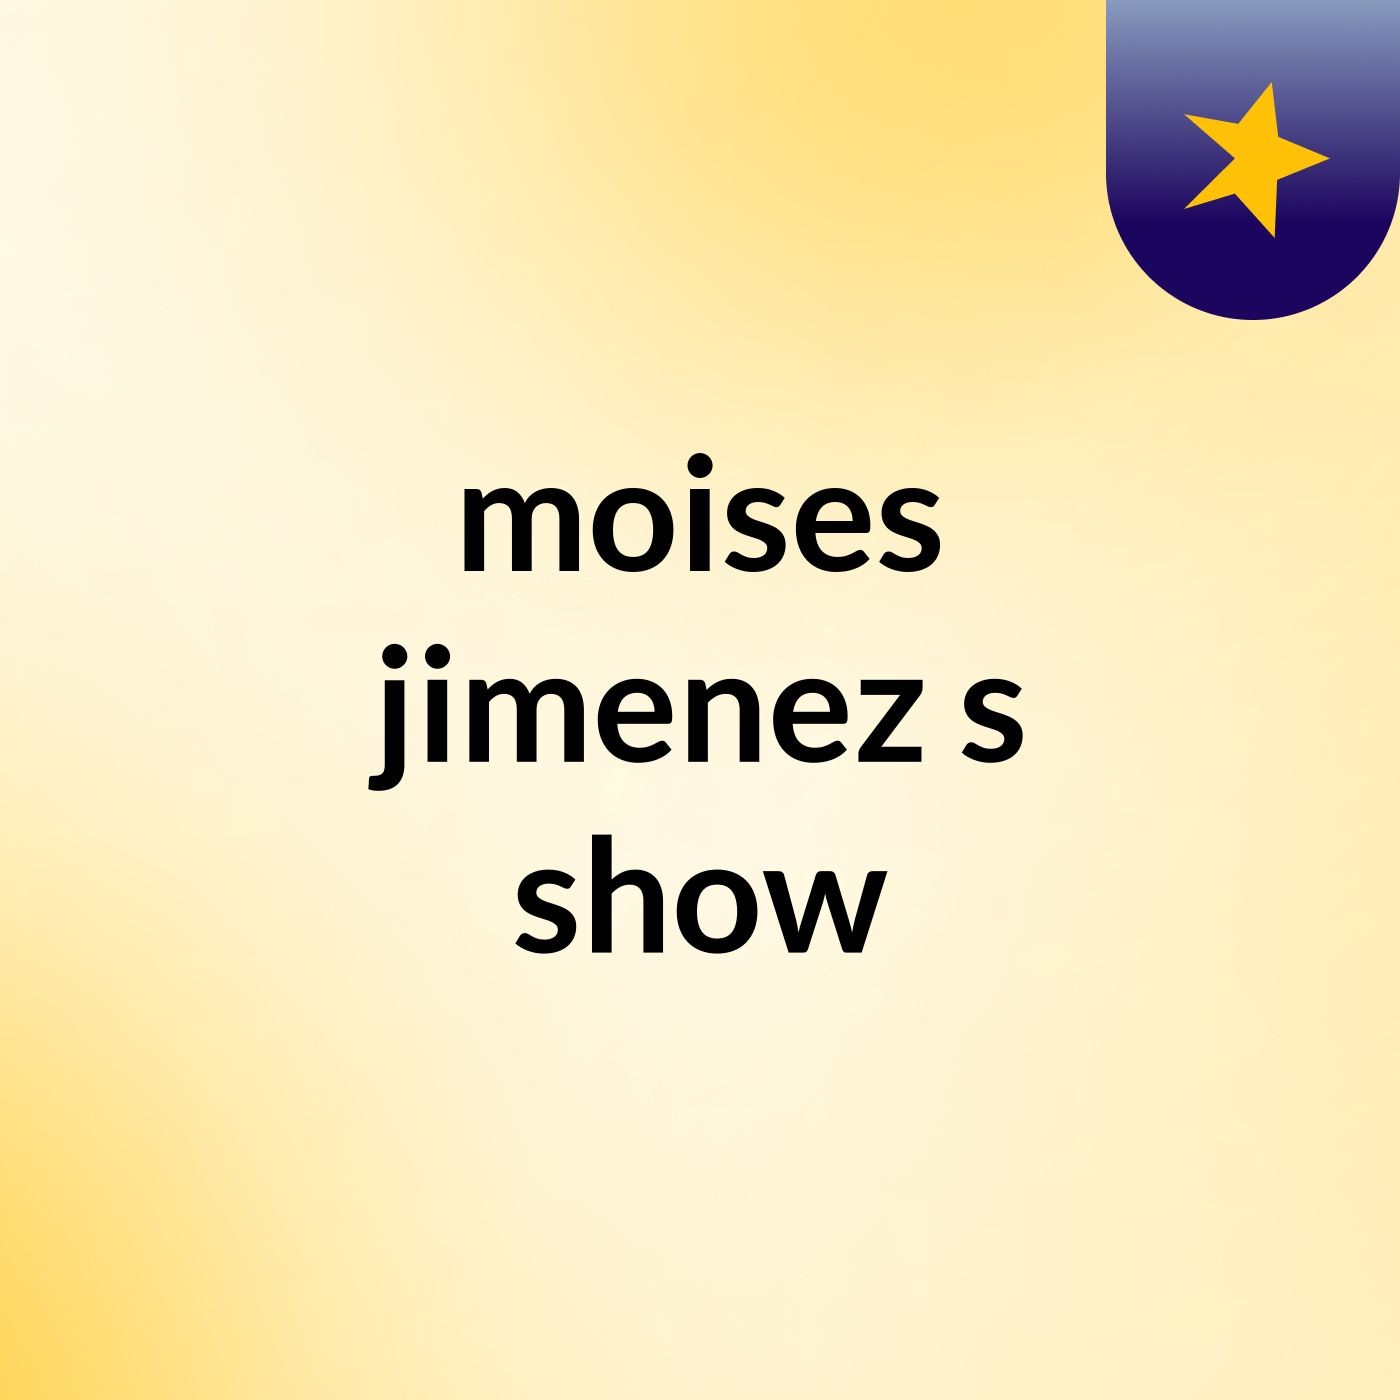 moises jimenez's show